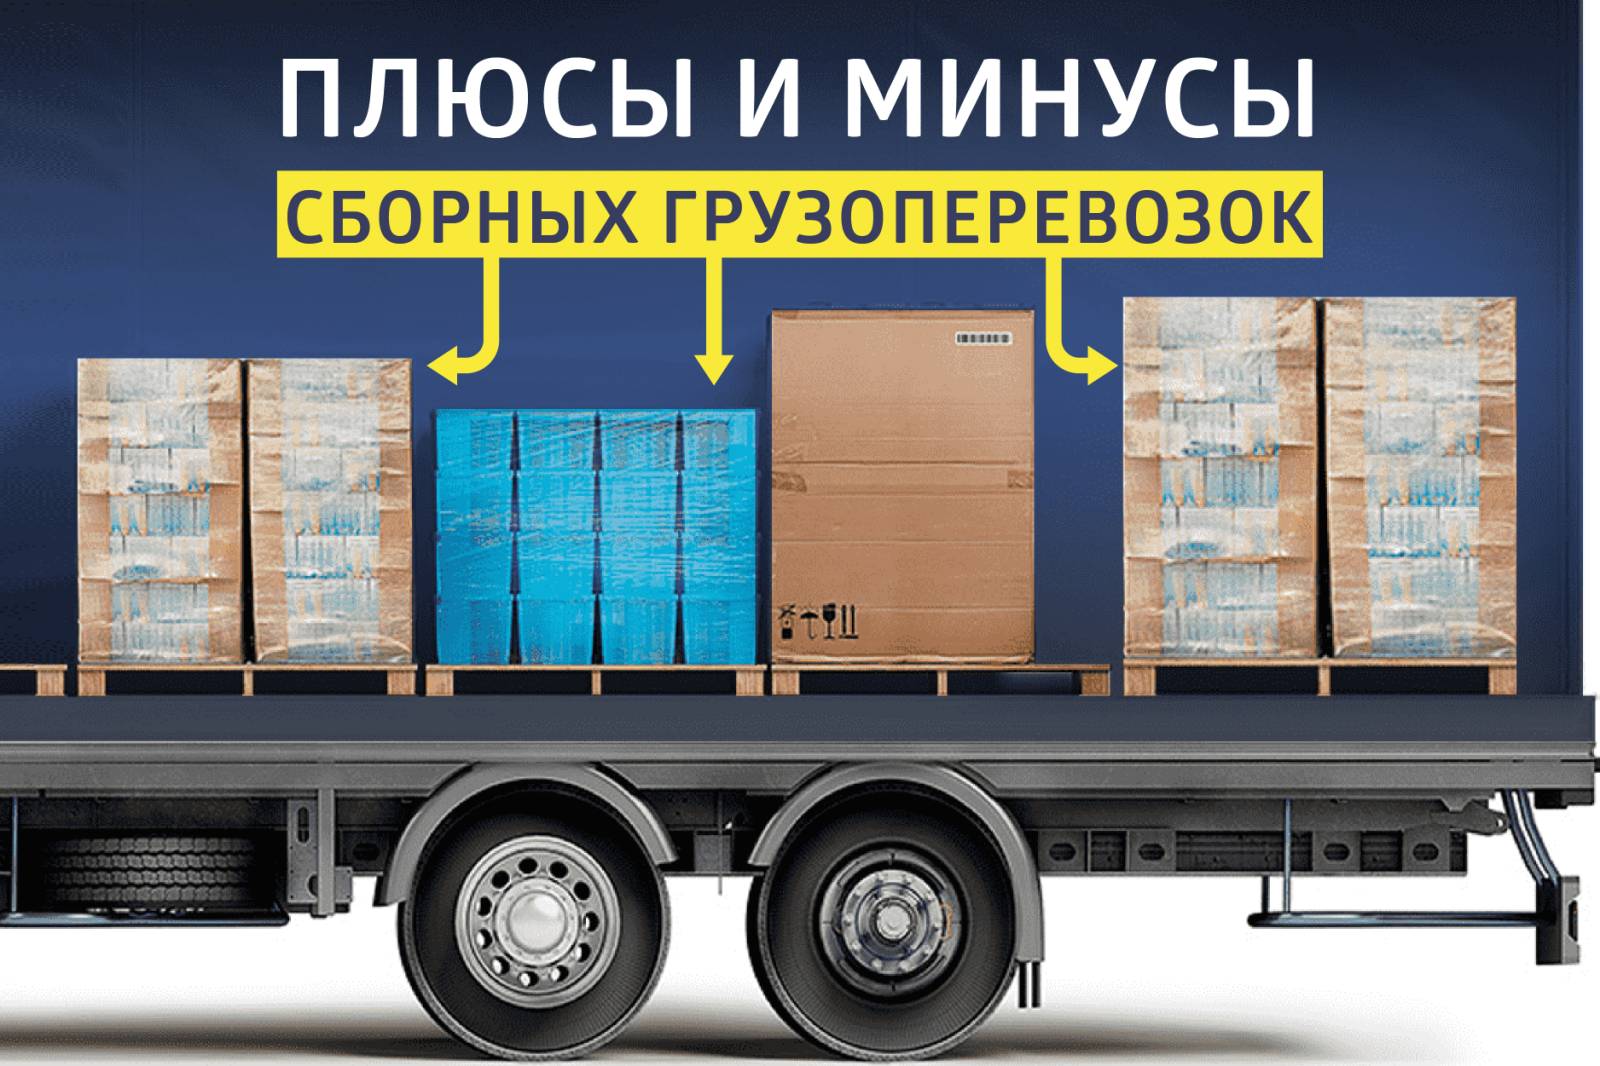 Основные достоинства и недостатки сборных перевозок грузов